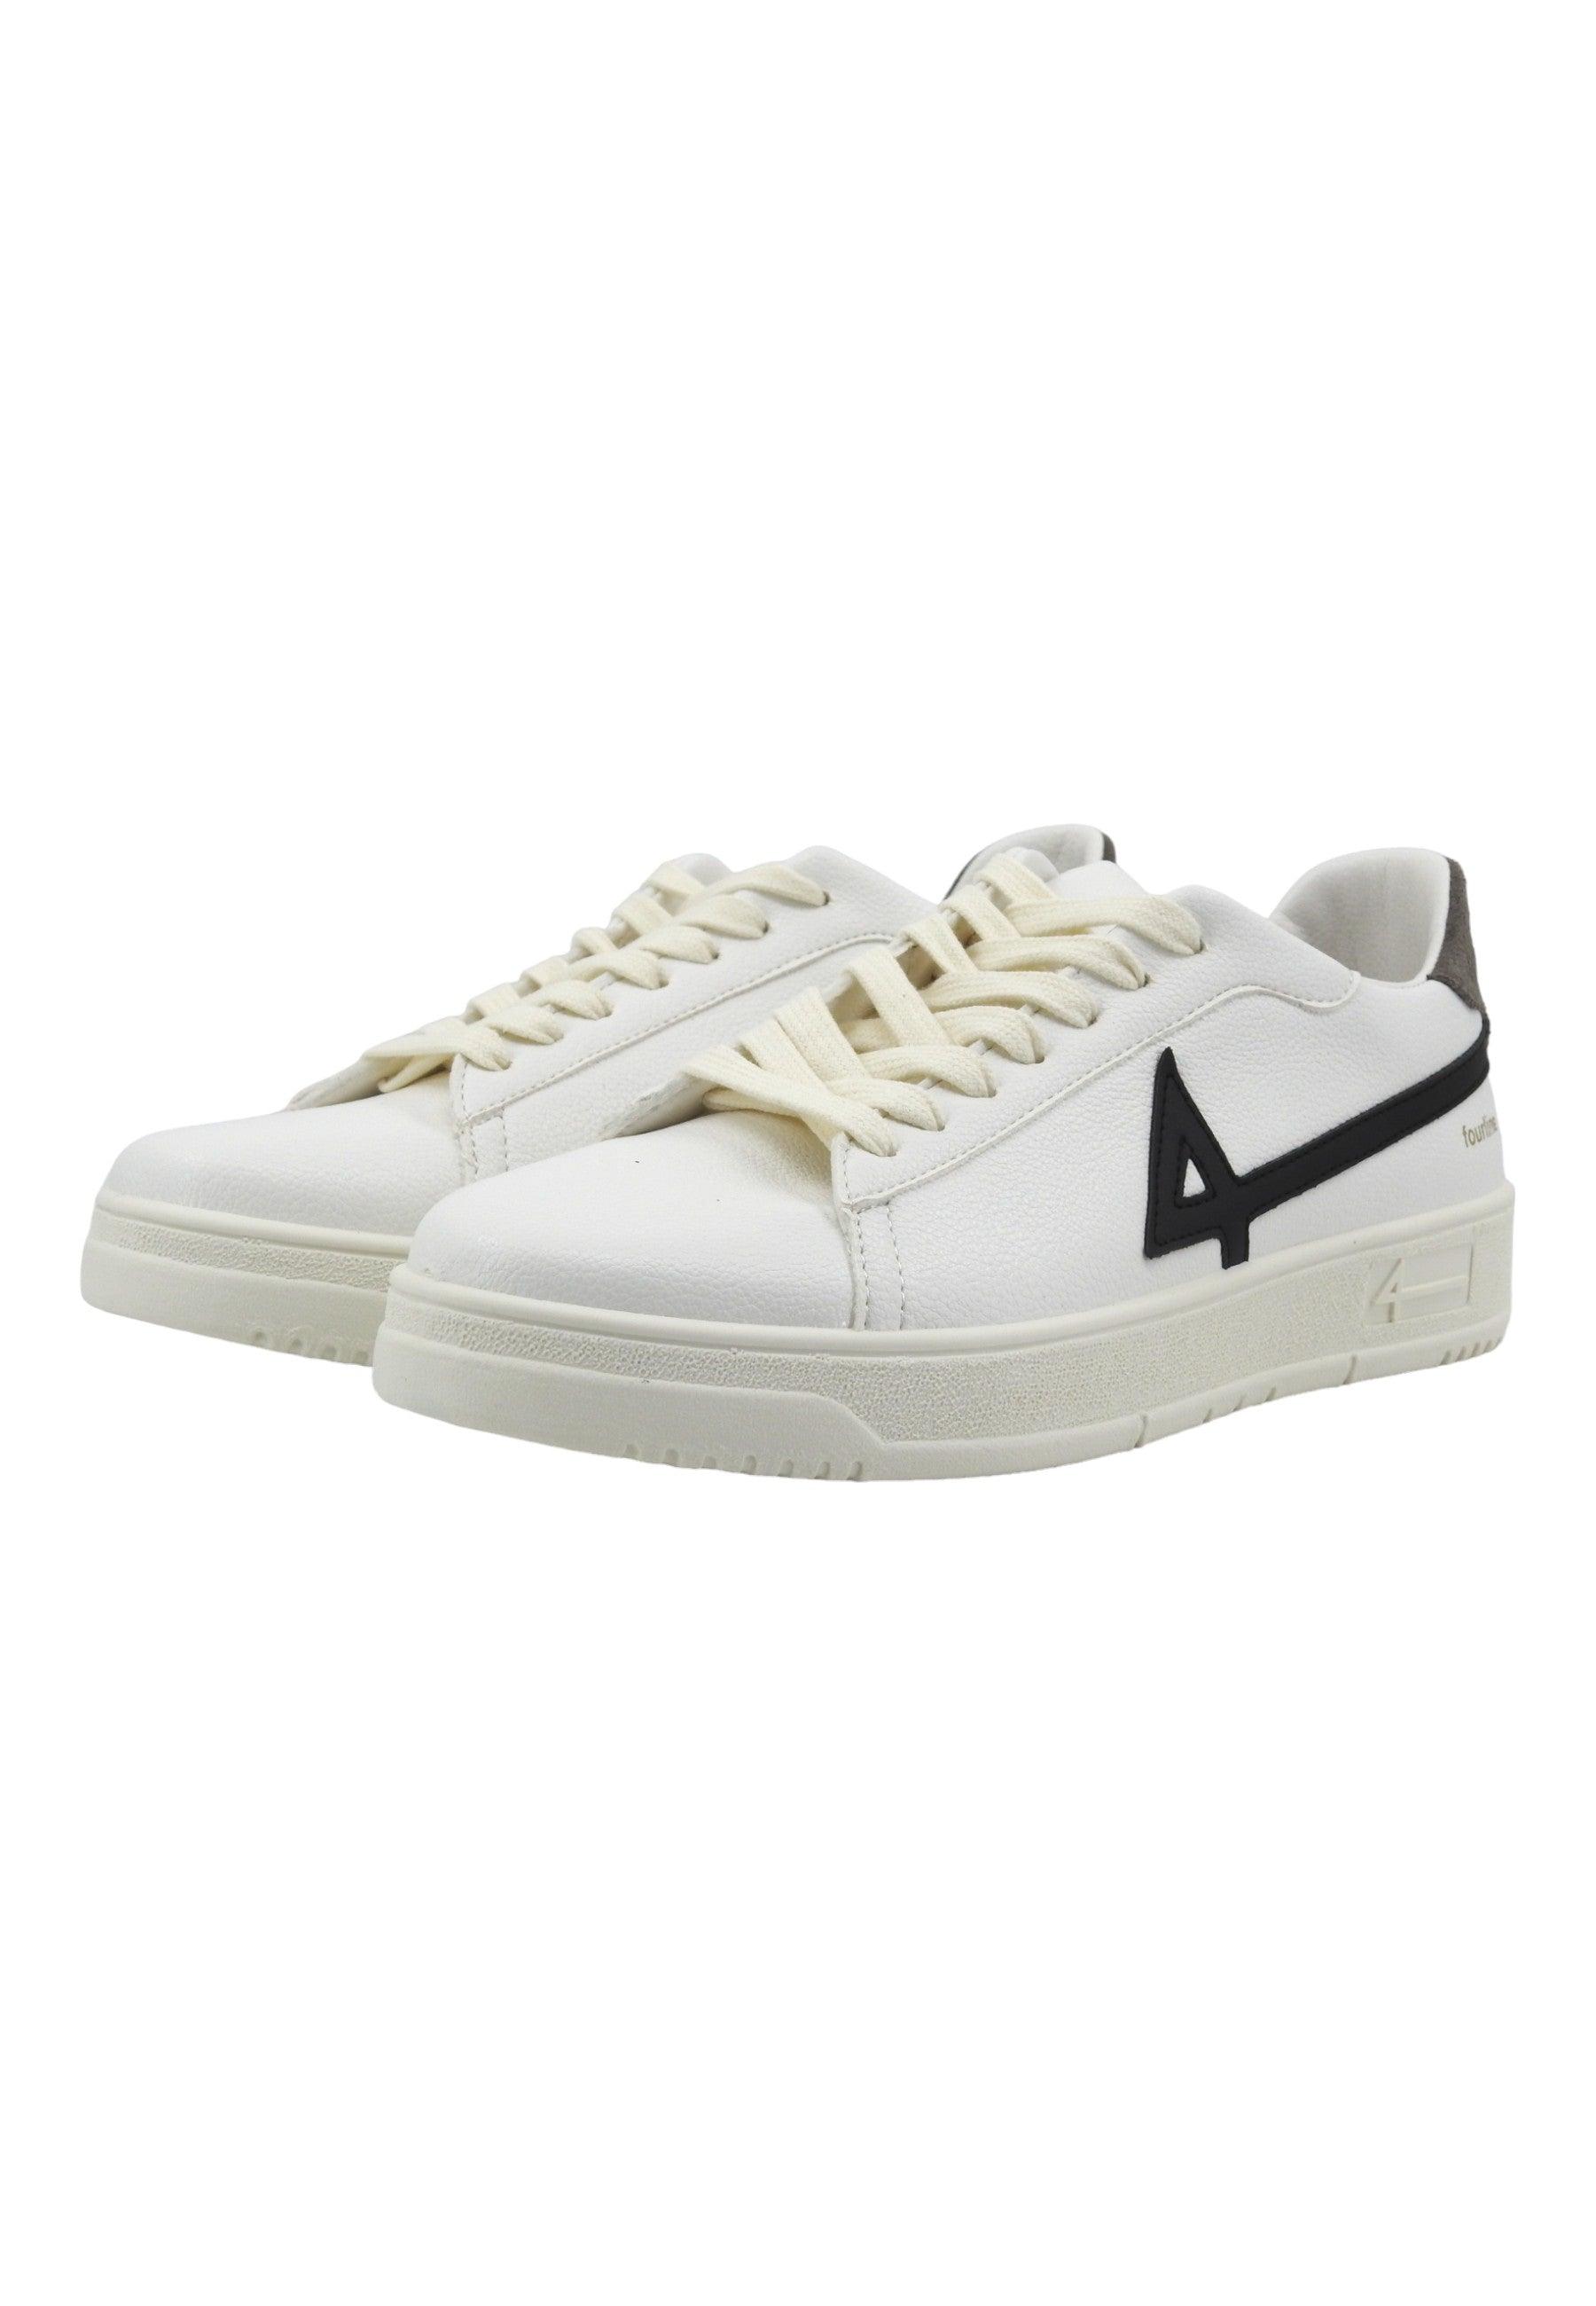 FOURLINE Sneaker Uomo Black Grey Bianco X504 - Sandrini Calzature e Abbigliamento